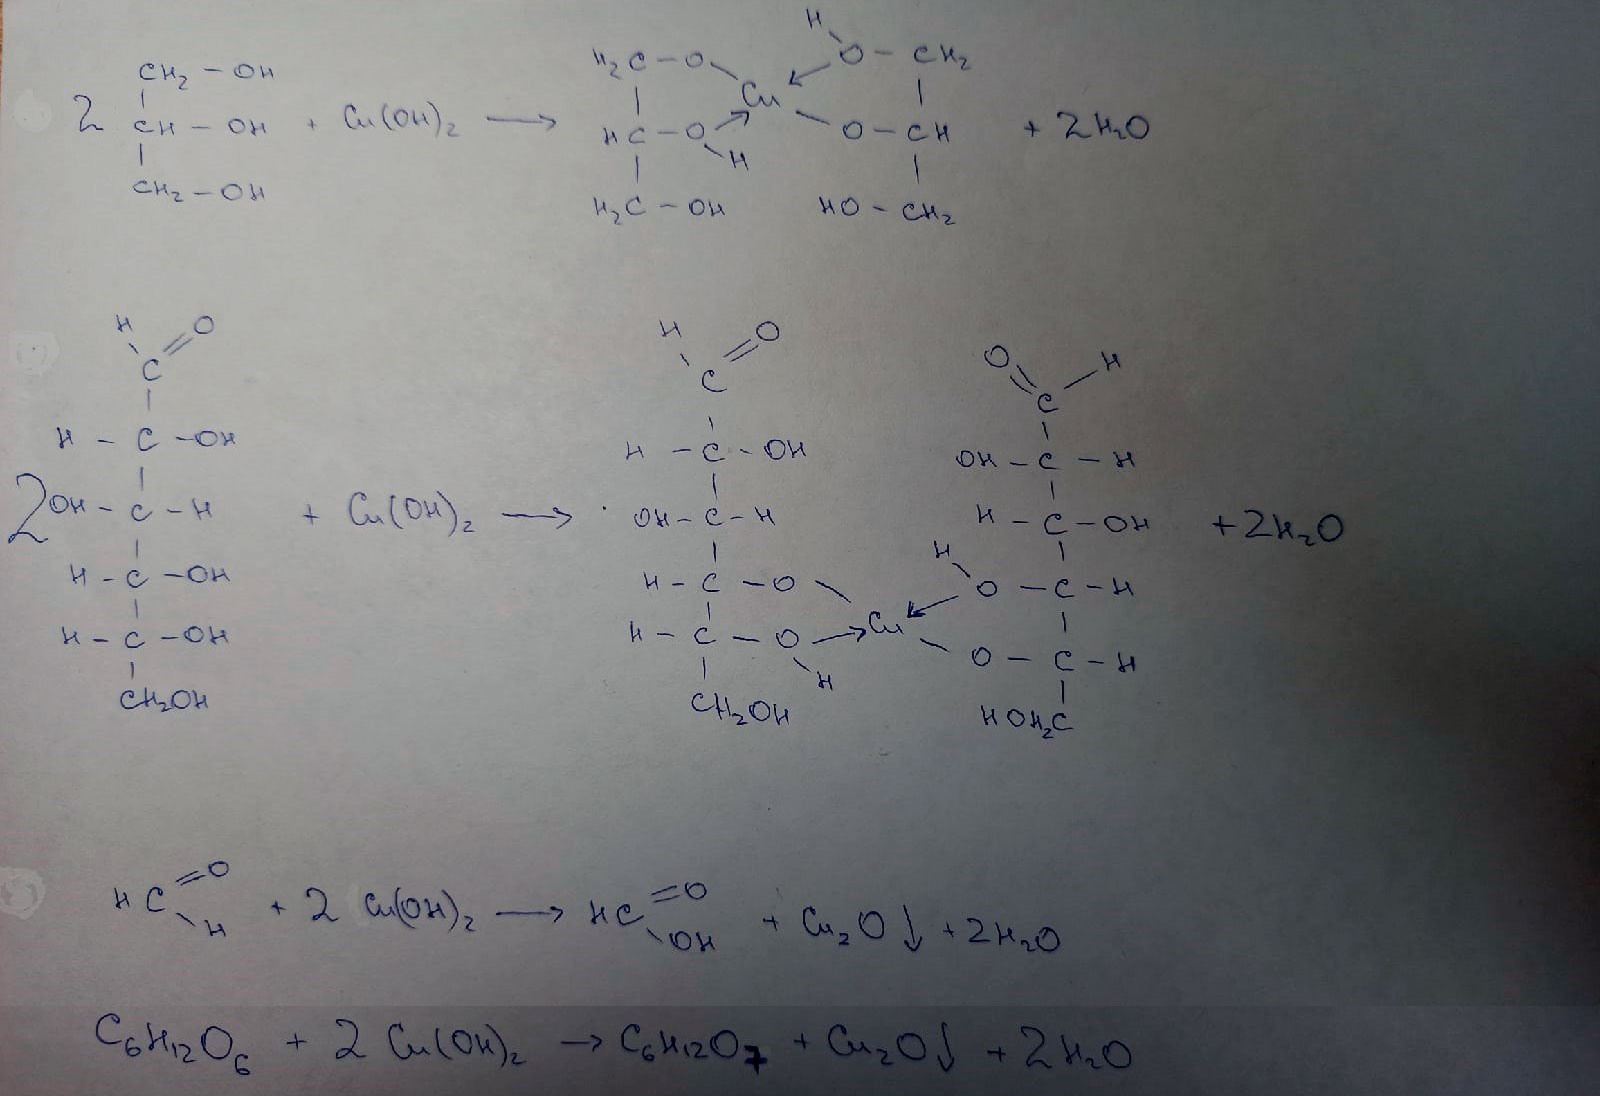 Глицерин сульфат меди 2. Сахароза и гидроксид меди 2. Реакция сахарозы с гидроксидом меди 2. Реакция сахарозы с гидроксидом меди. Сахароза плюс гидроксид меди 2.